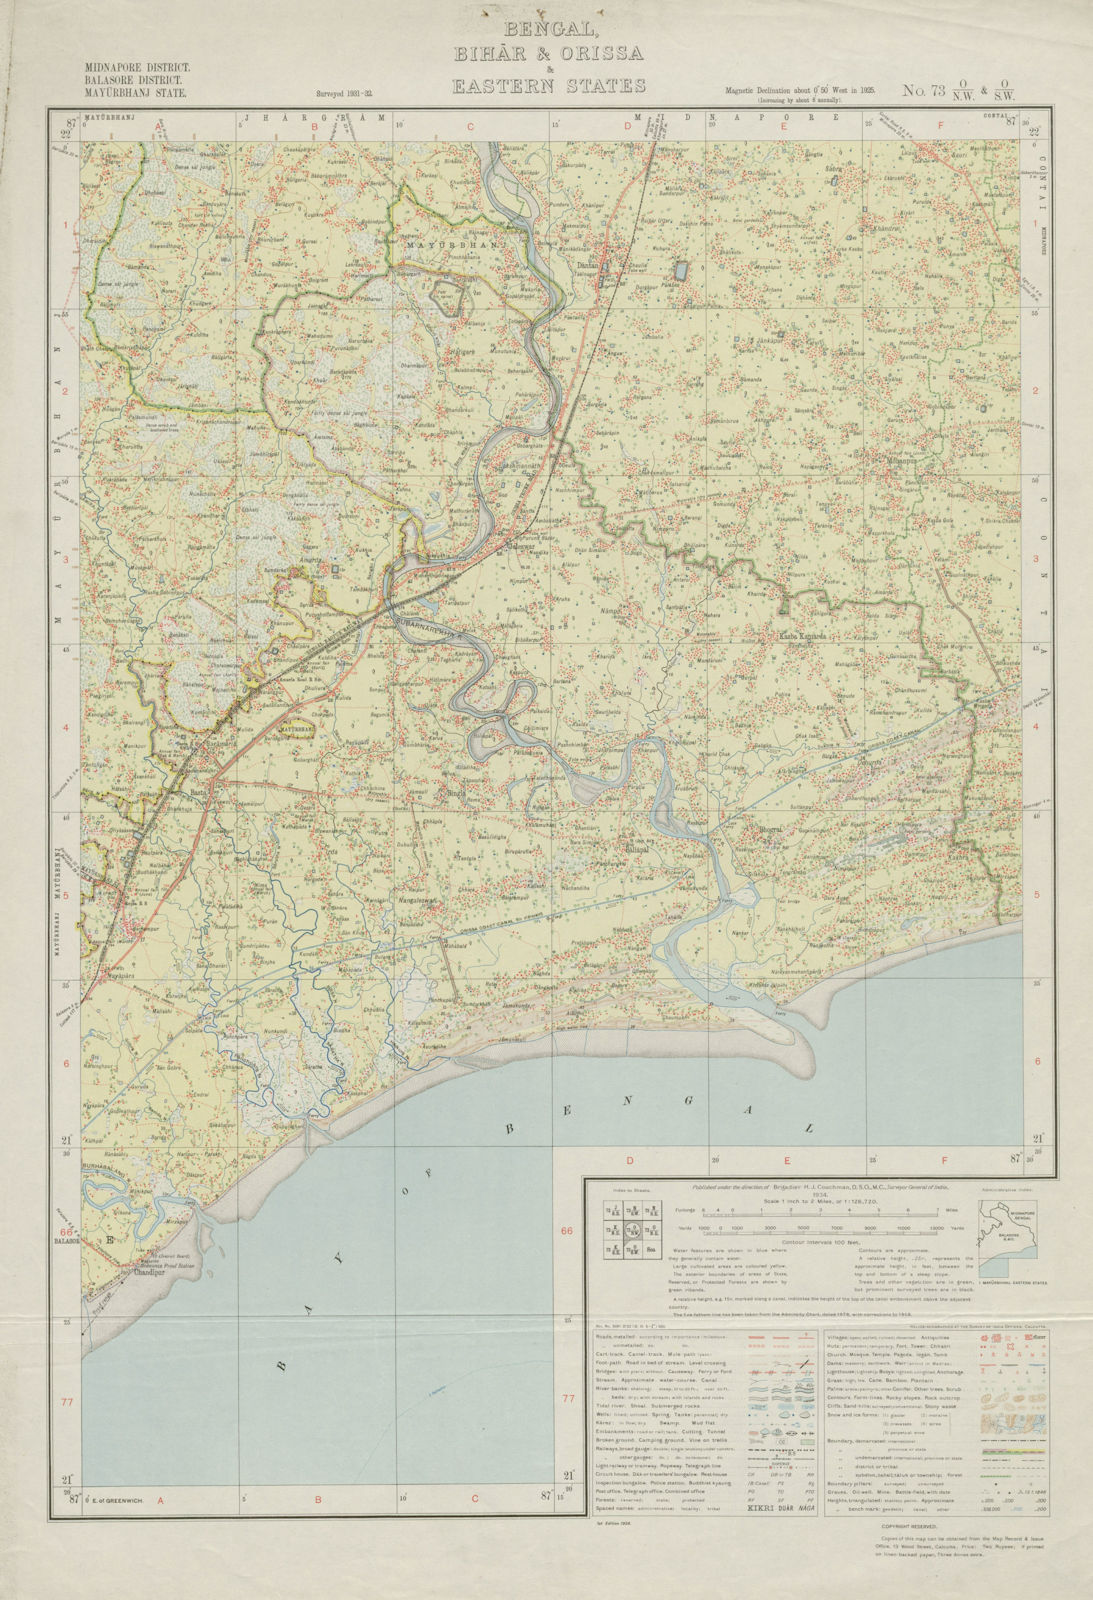 SURVEY OF INDIA 73 O/NW O/SW West Bengal Odisha Subarnarekha Jaleswar 1934 map